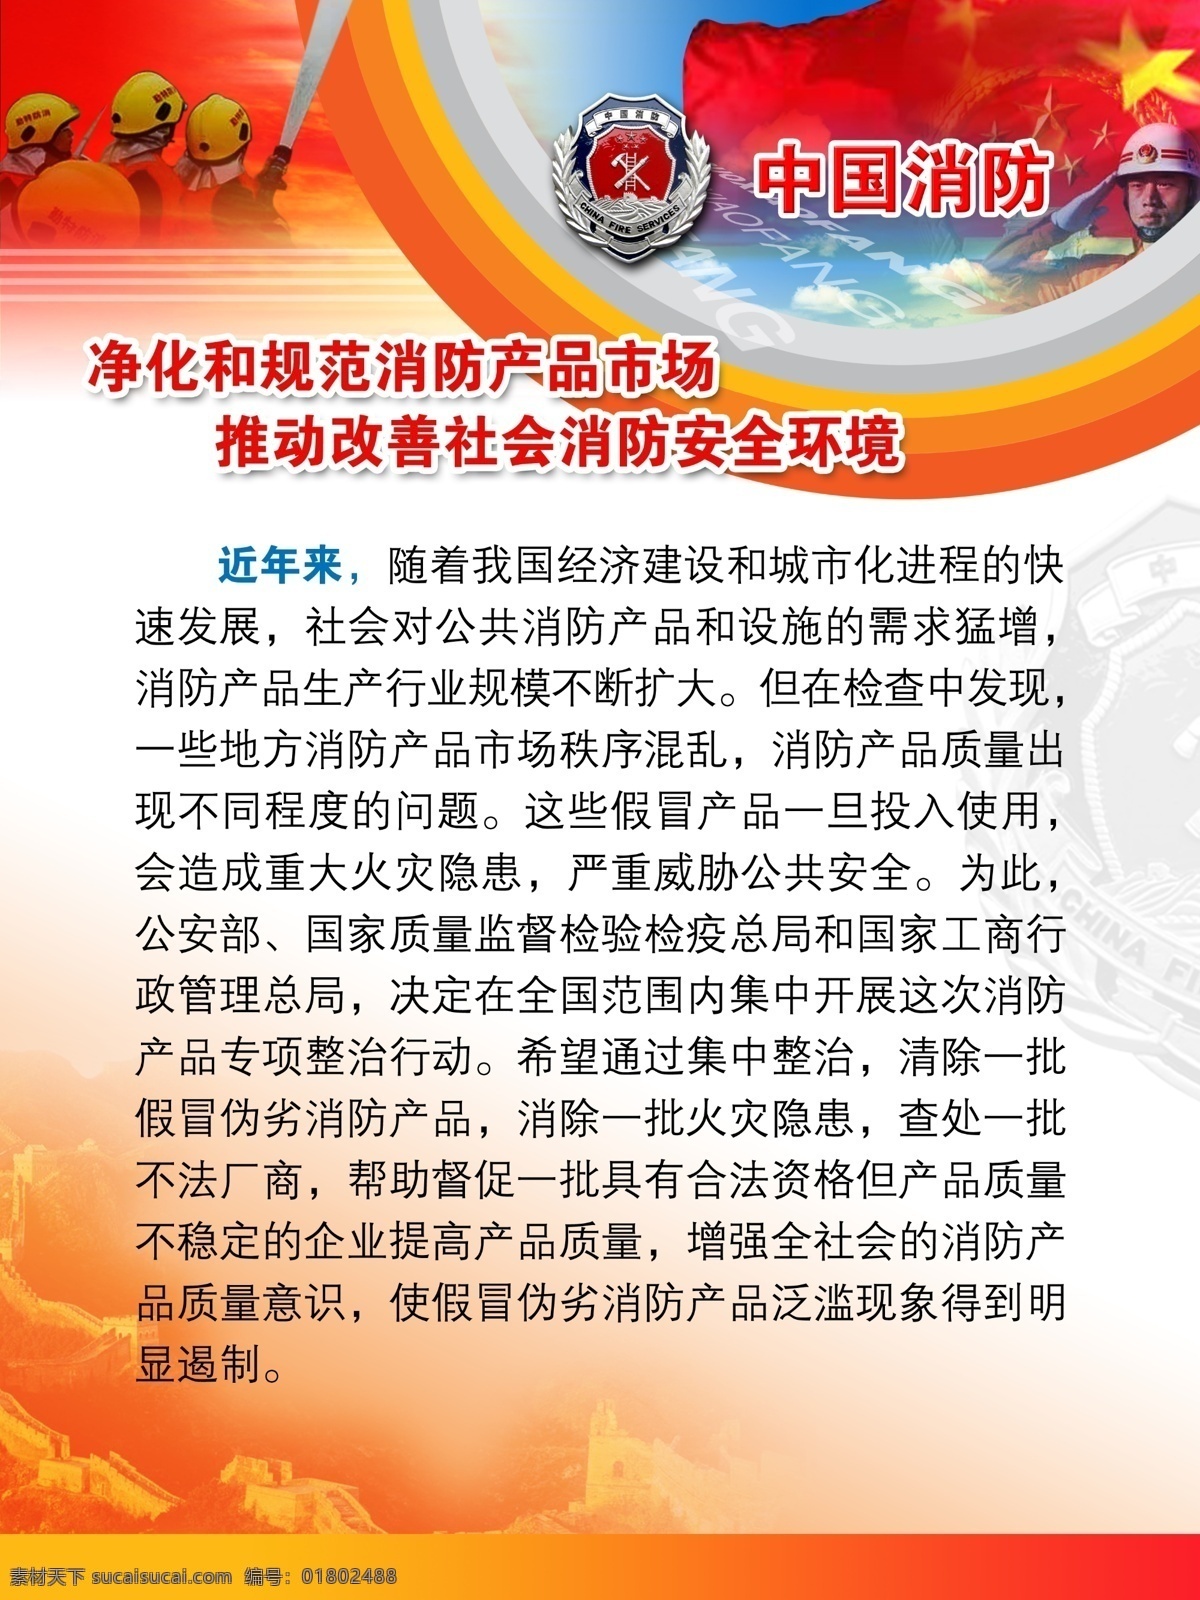 中国 消防 长城 五星红旗 消防员 净化 规范 产品市场 展板 安全展板设计